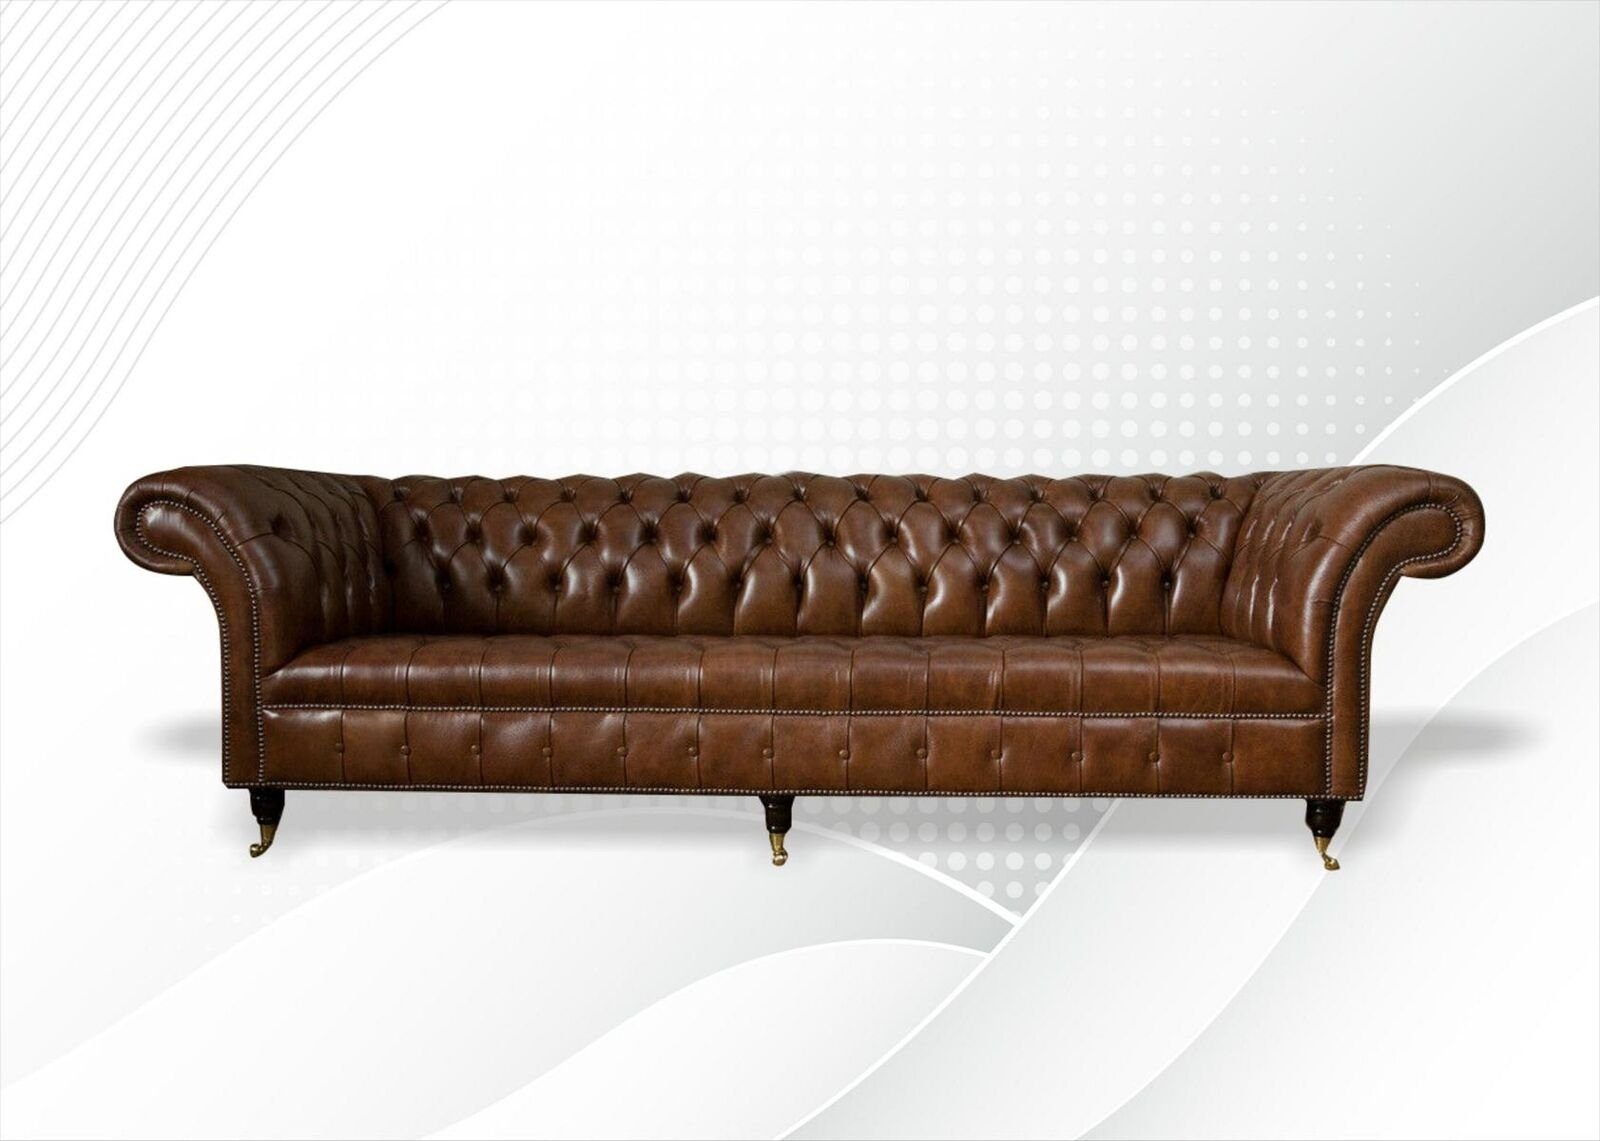 JVmoebel 4-Sitzer Chesterfield 4 Sitzer Design Leder Sofa xxl 100% Leder Sofort